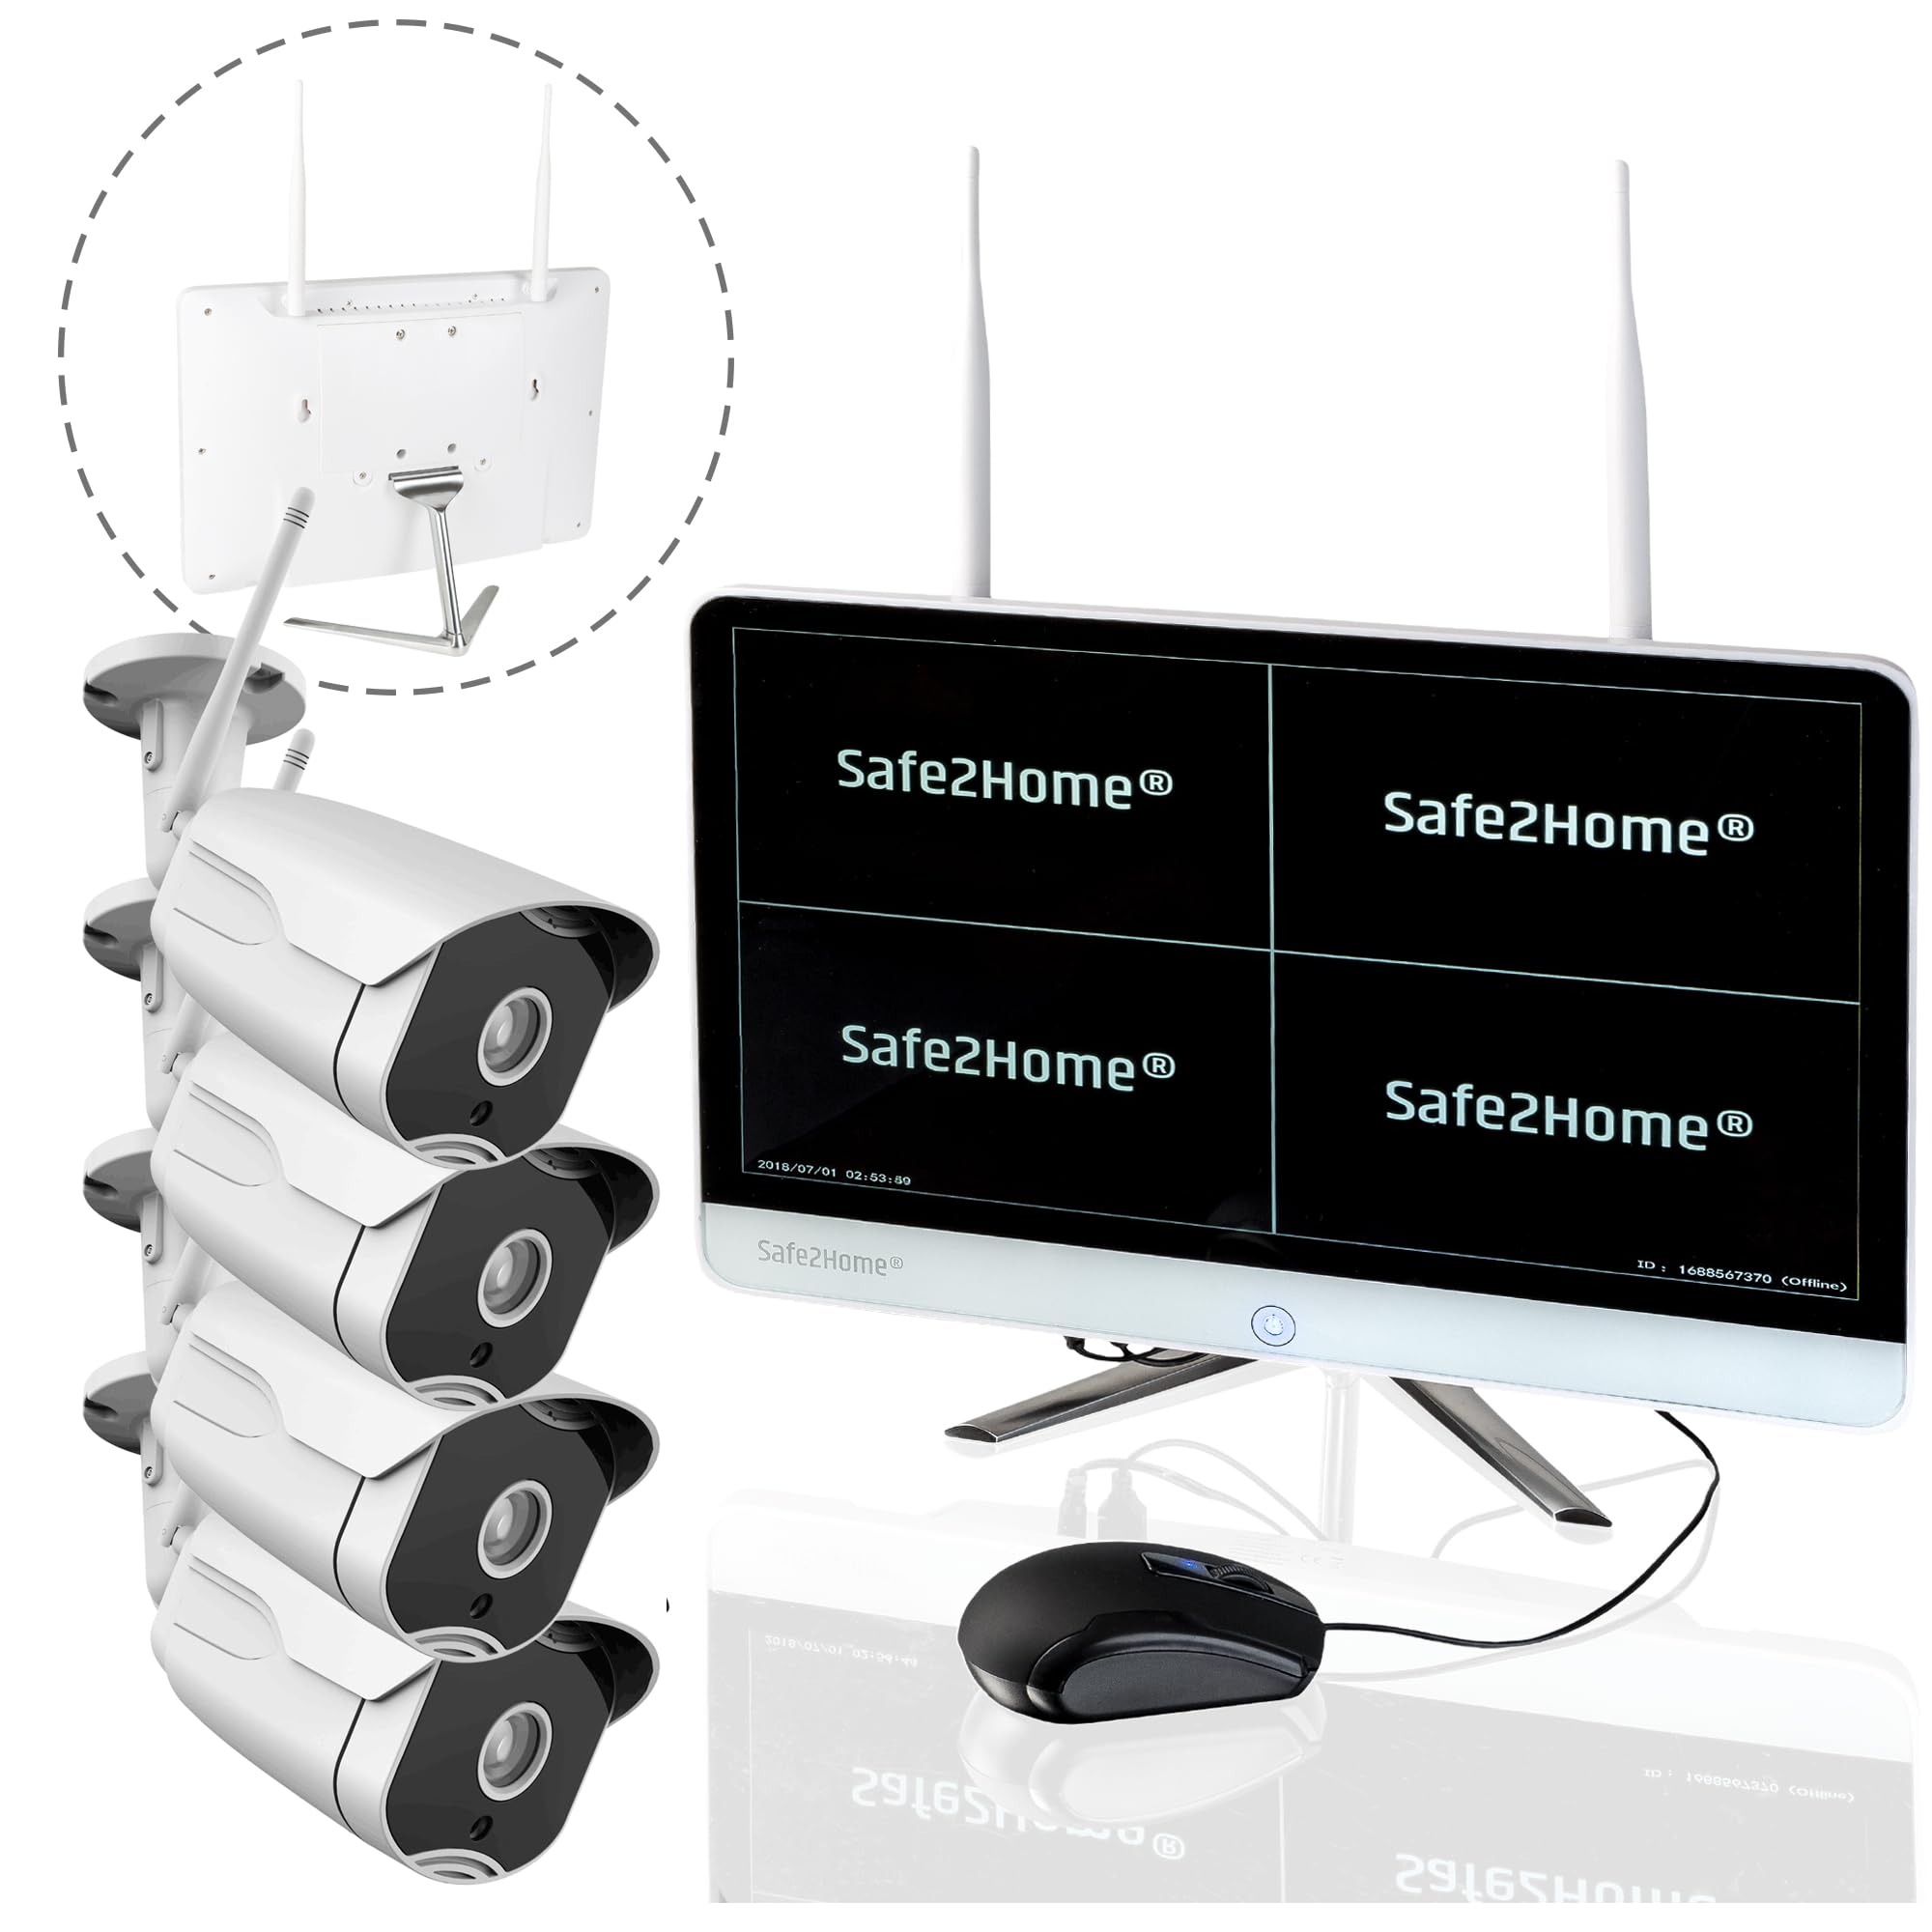 Safe2Home Videoüberwachung Set Funk 1TB 8 Kanal - Rekorder Festplatte 4X Full HD Cam + Monitor - Nachtsicht Überwachungskamera mit Bewegungserkennung und Aufzeichnungkabellos innen außen